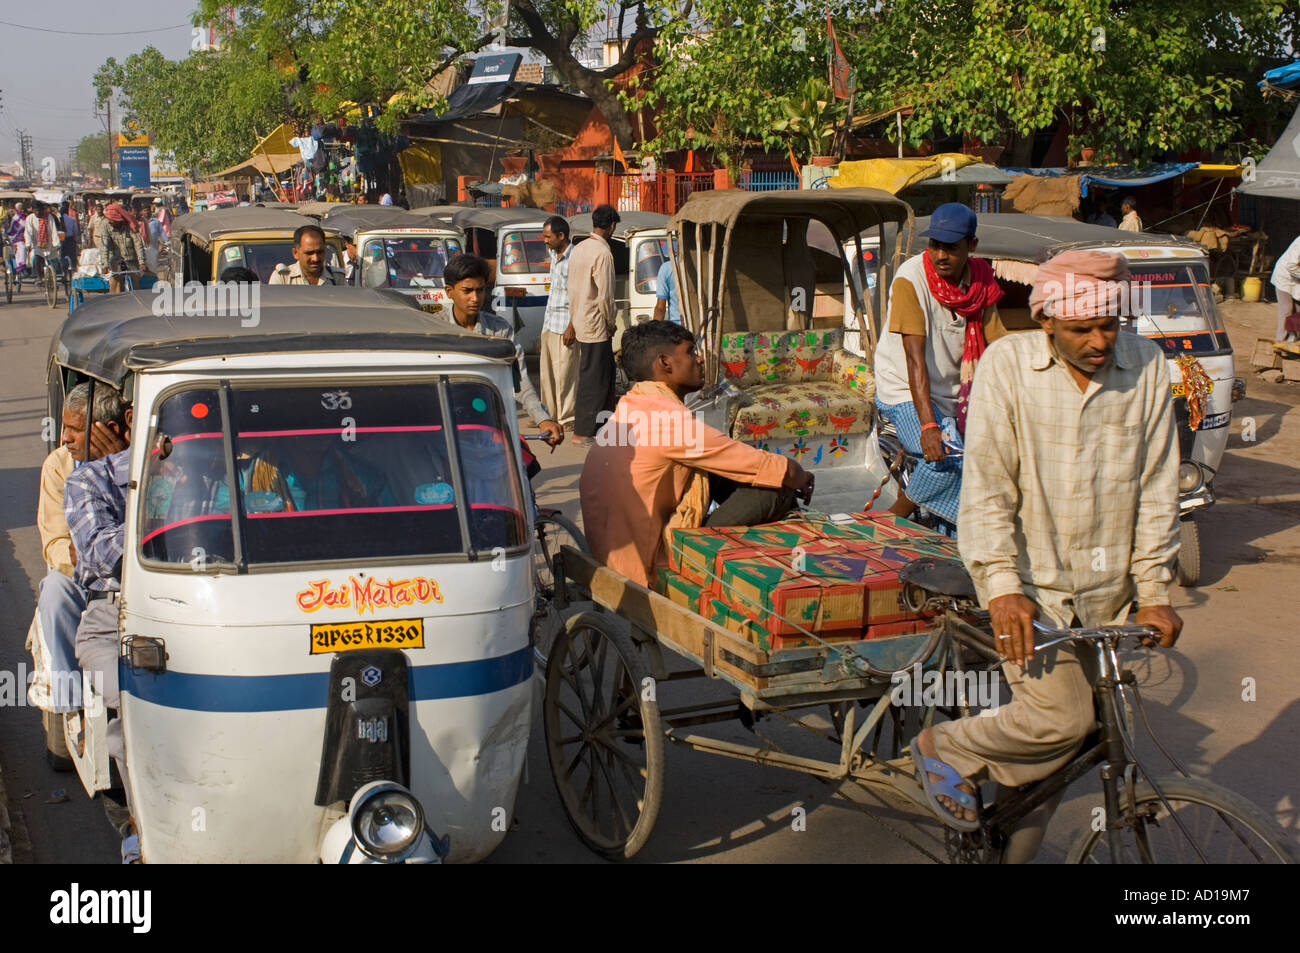 Une scène de rue chaotique typique à Varanasi avec randonnée et auto rickshaws (Tuk Tuks) sur les rues animées. Banque D'Images